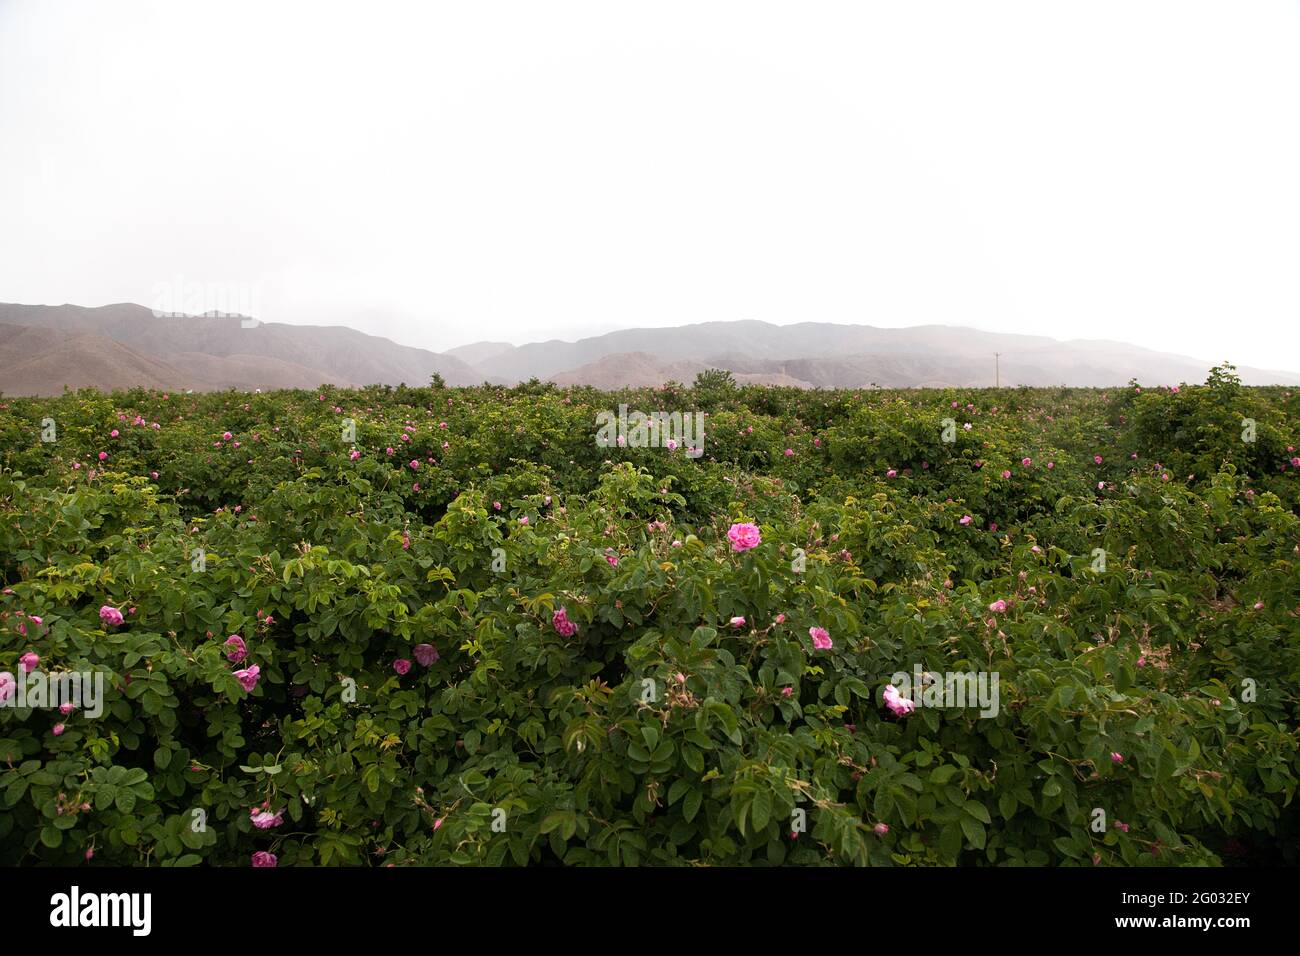 Um Rosenwasser und Rosenöl herzustellen, gehen Frauen und Männer im Iran jedes Jahr im Mai zur Ernte auf die Felder. Die Stadt Ghamsar ist bekannt für Stock Photo